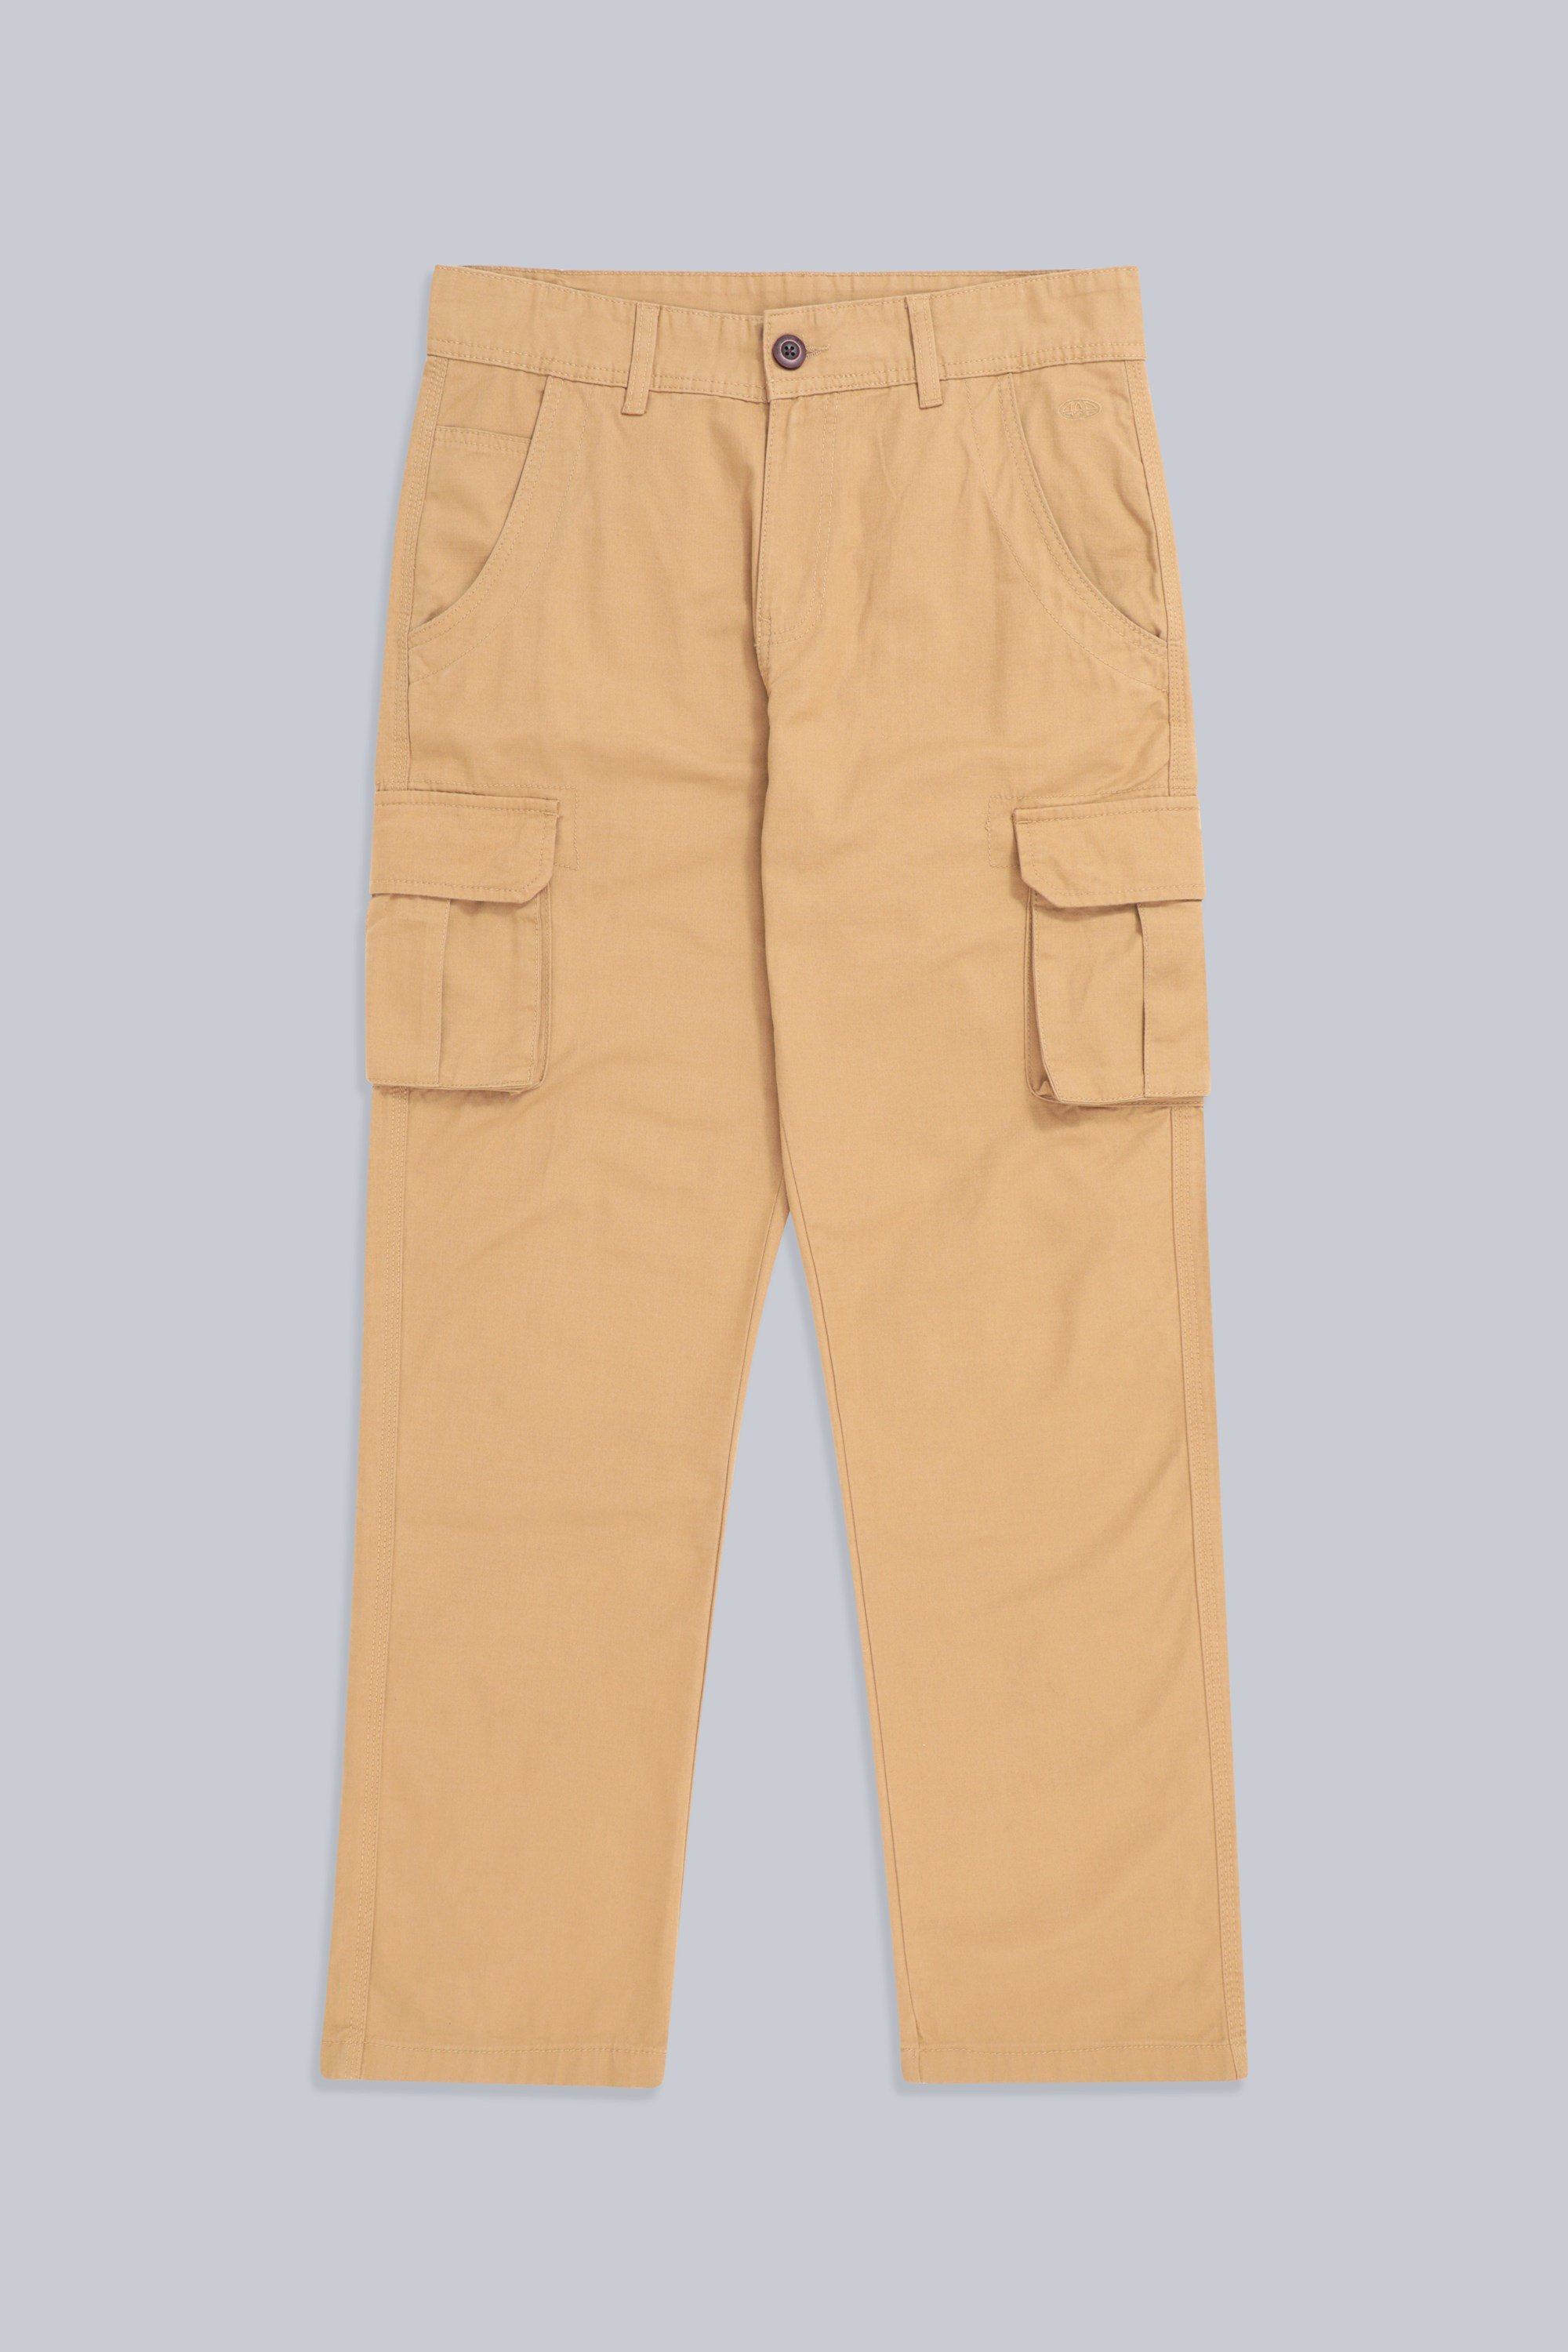 Pantalon léger 100% Pantalon de Short de sergé de Coton Shorts Respirables et durables d'été Marque : Mountain WarehouseMountain Warehouse Camo Cargo Abréviations de Cargaison de Mens Camo 